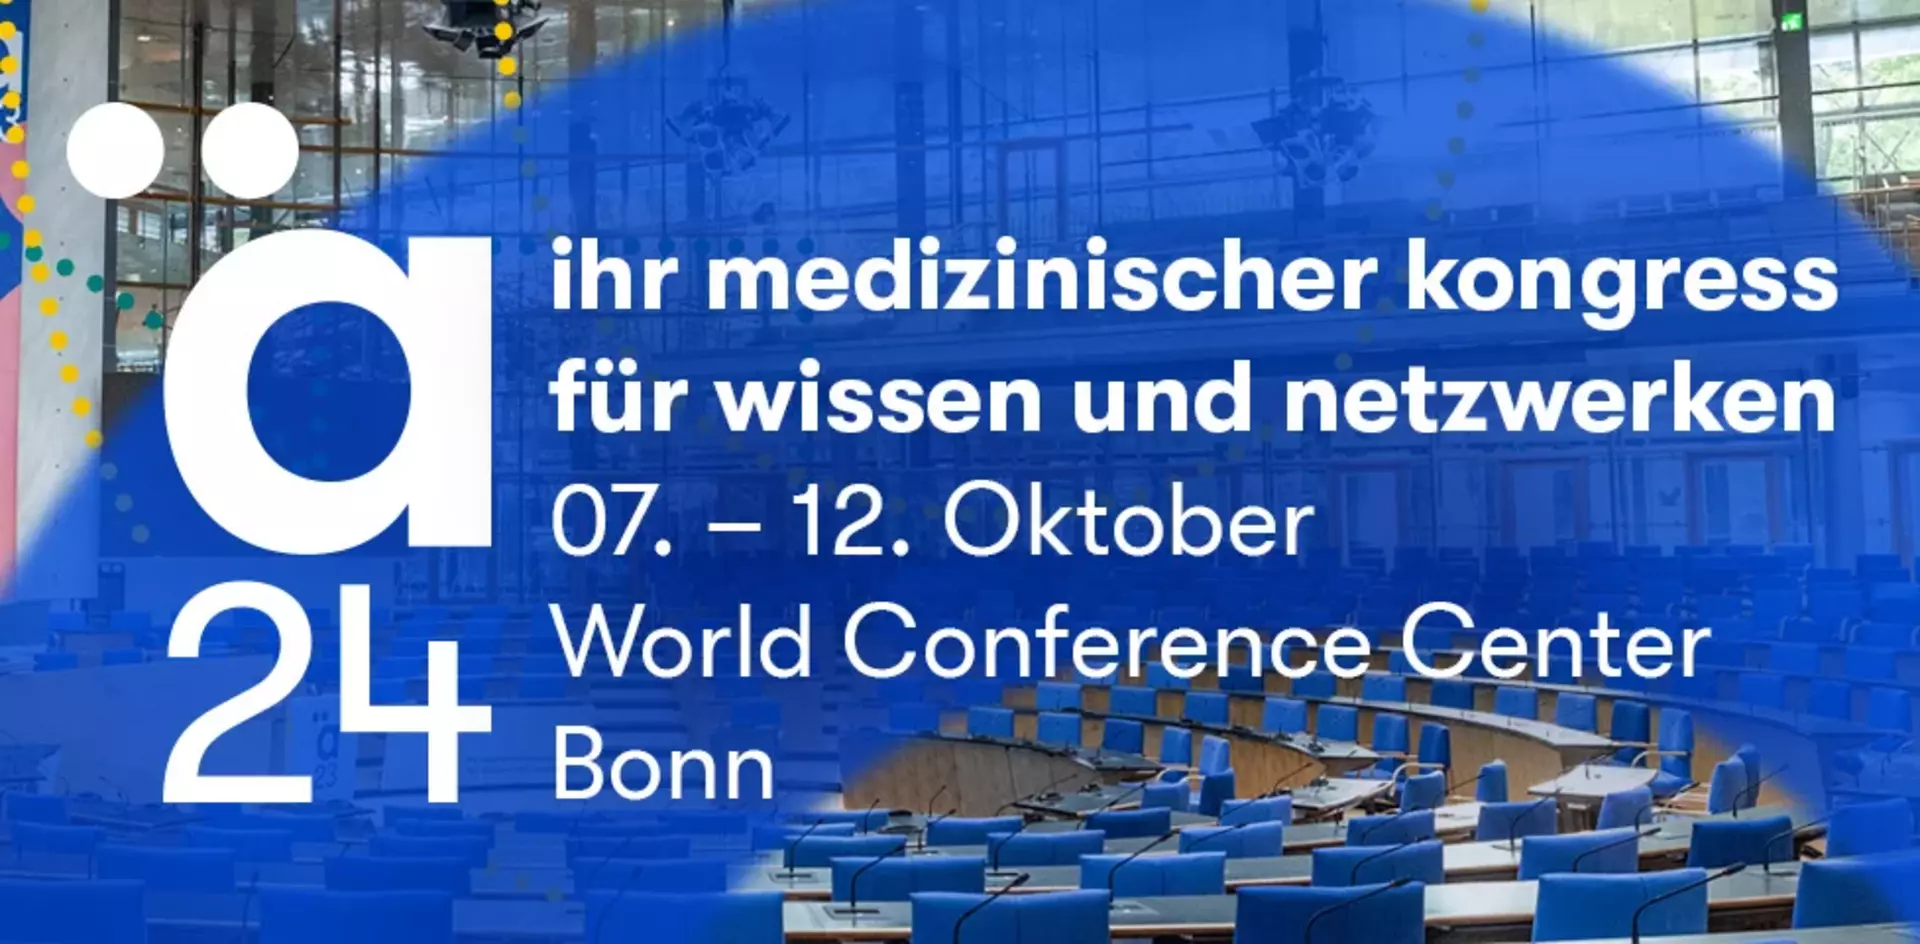 Kongress ä24, World Conference Center Bonn